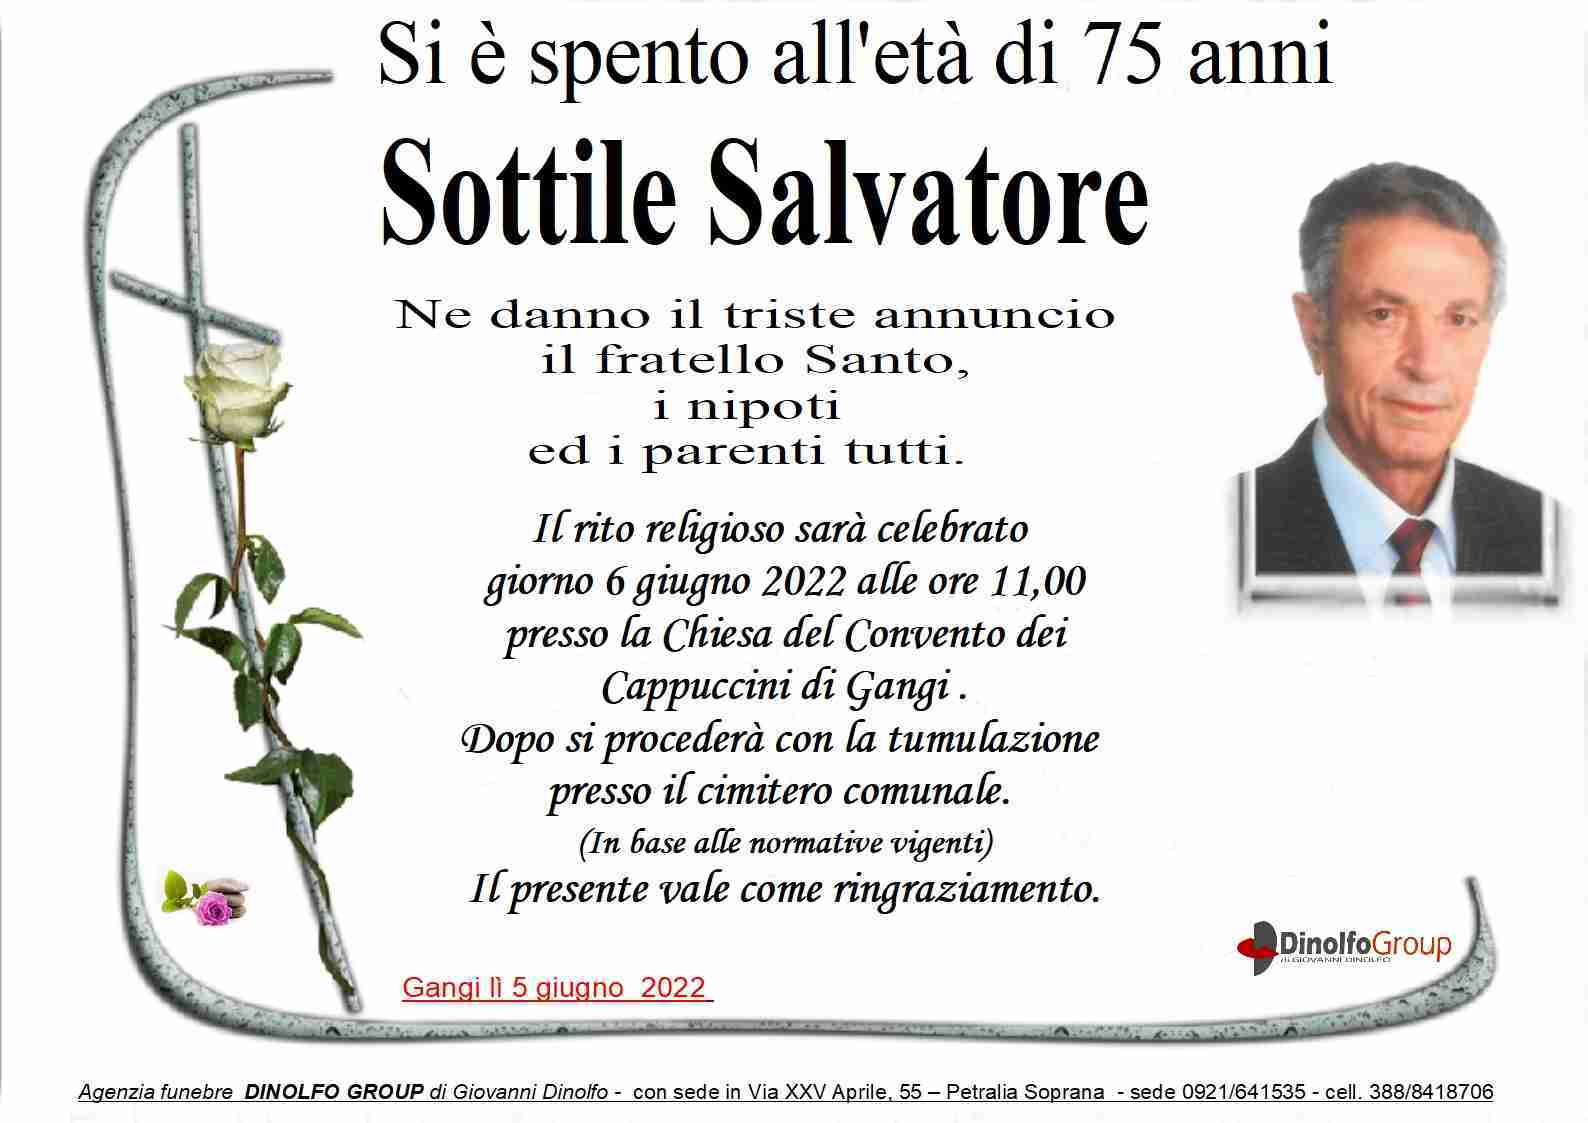 Salvatore Sottile